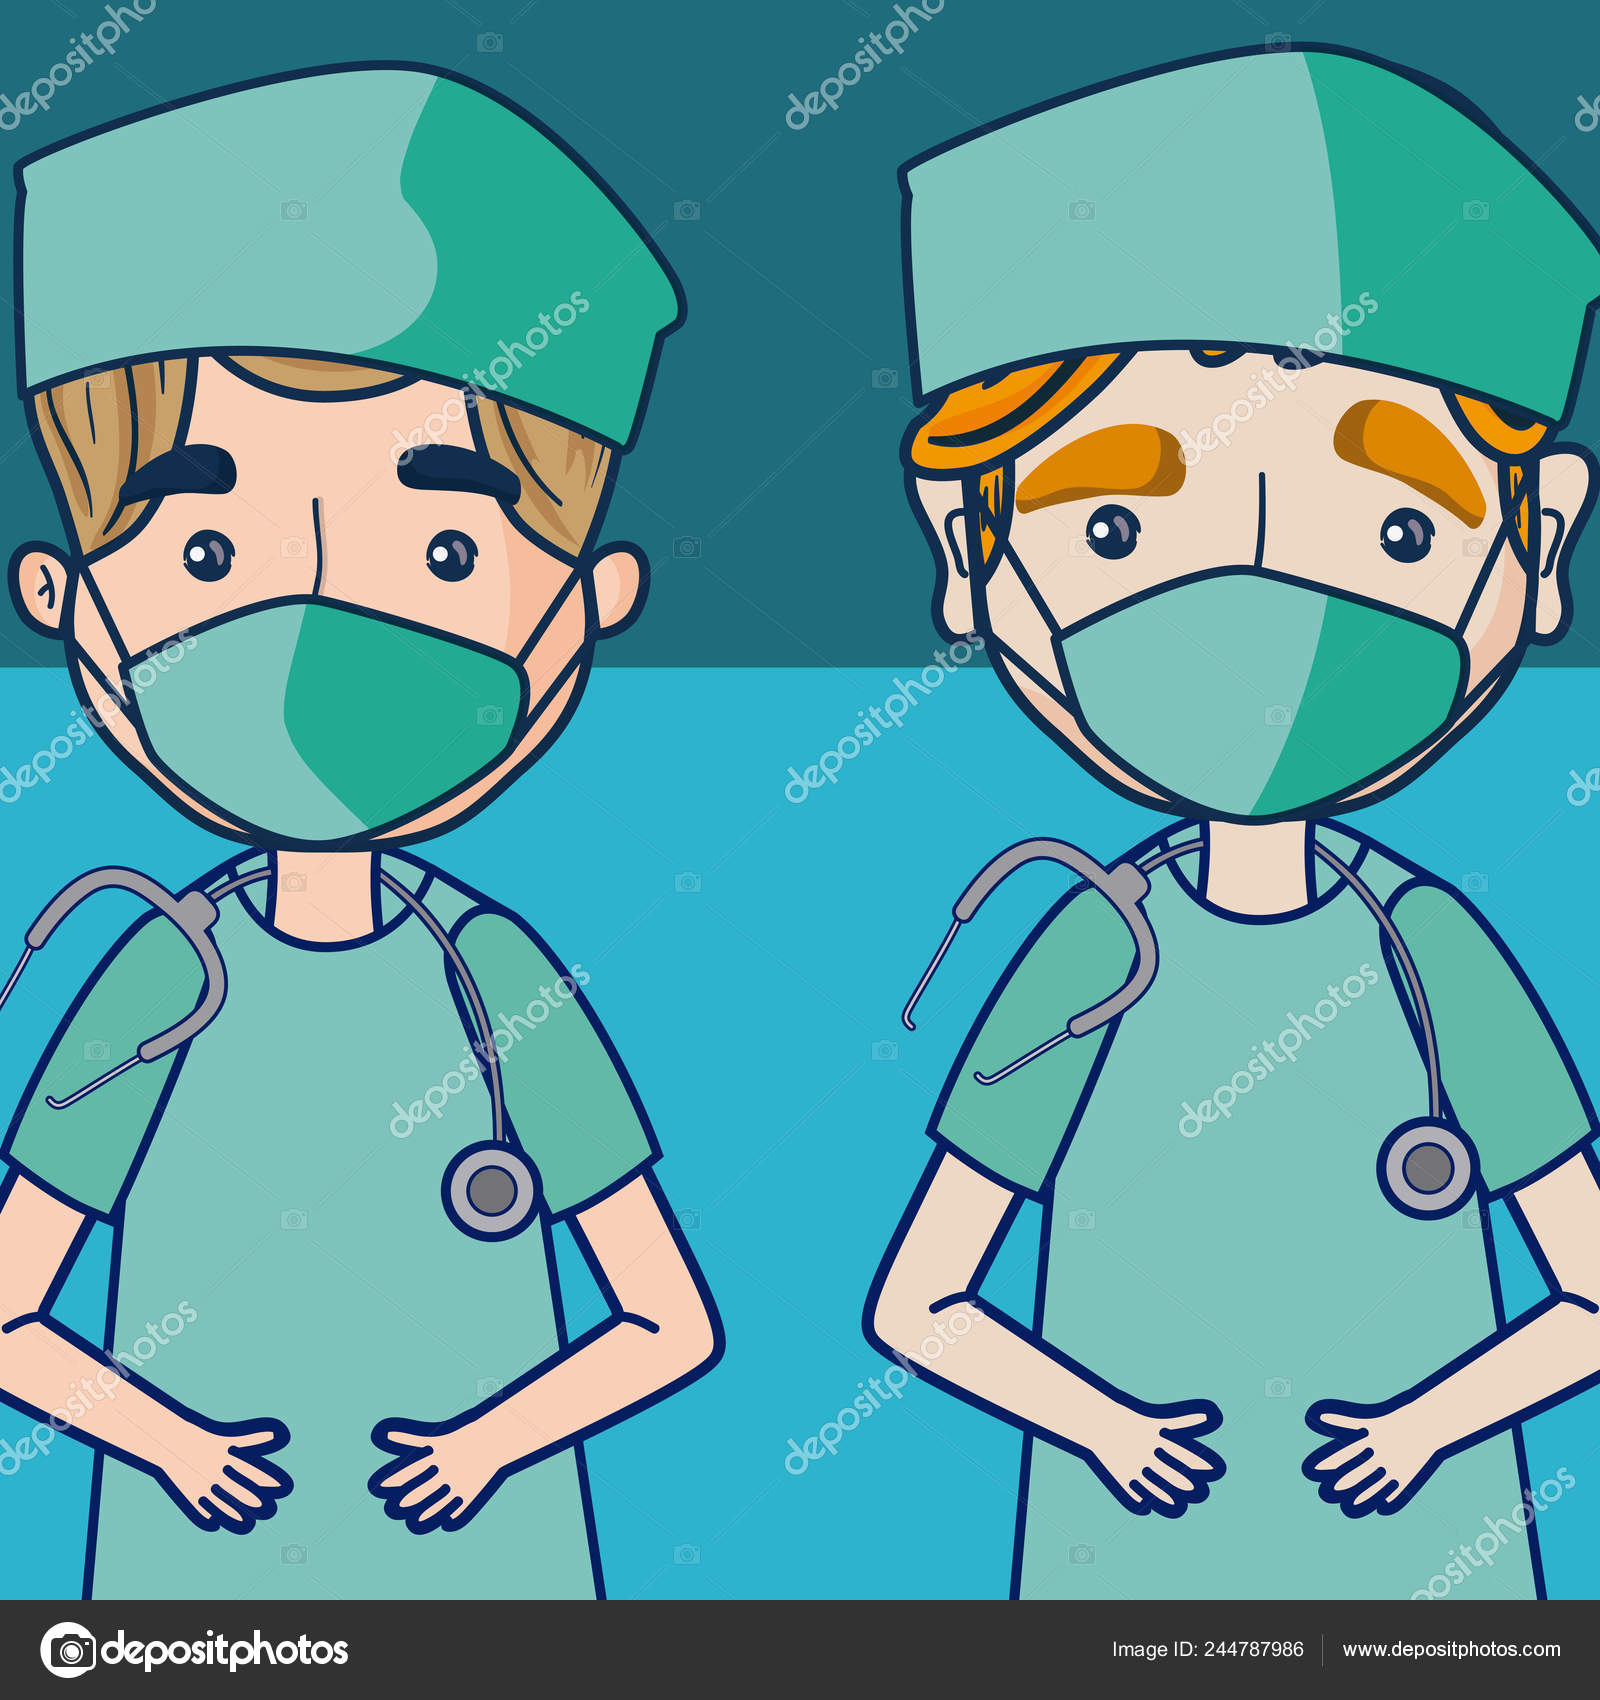 Médicos Equipe Médica Desenhos Animados Sobre Fundo Azul Vetor Ilustração  imagem vetorial de stockgiu© 244787986